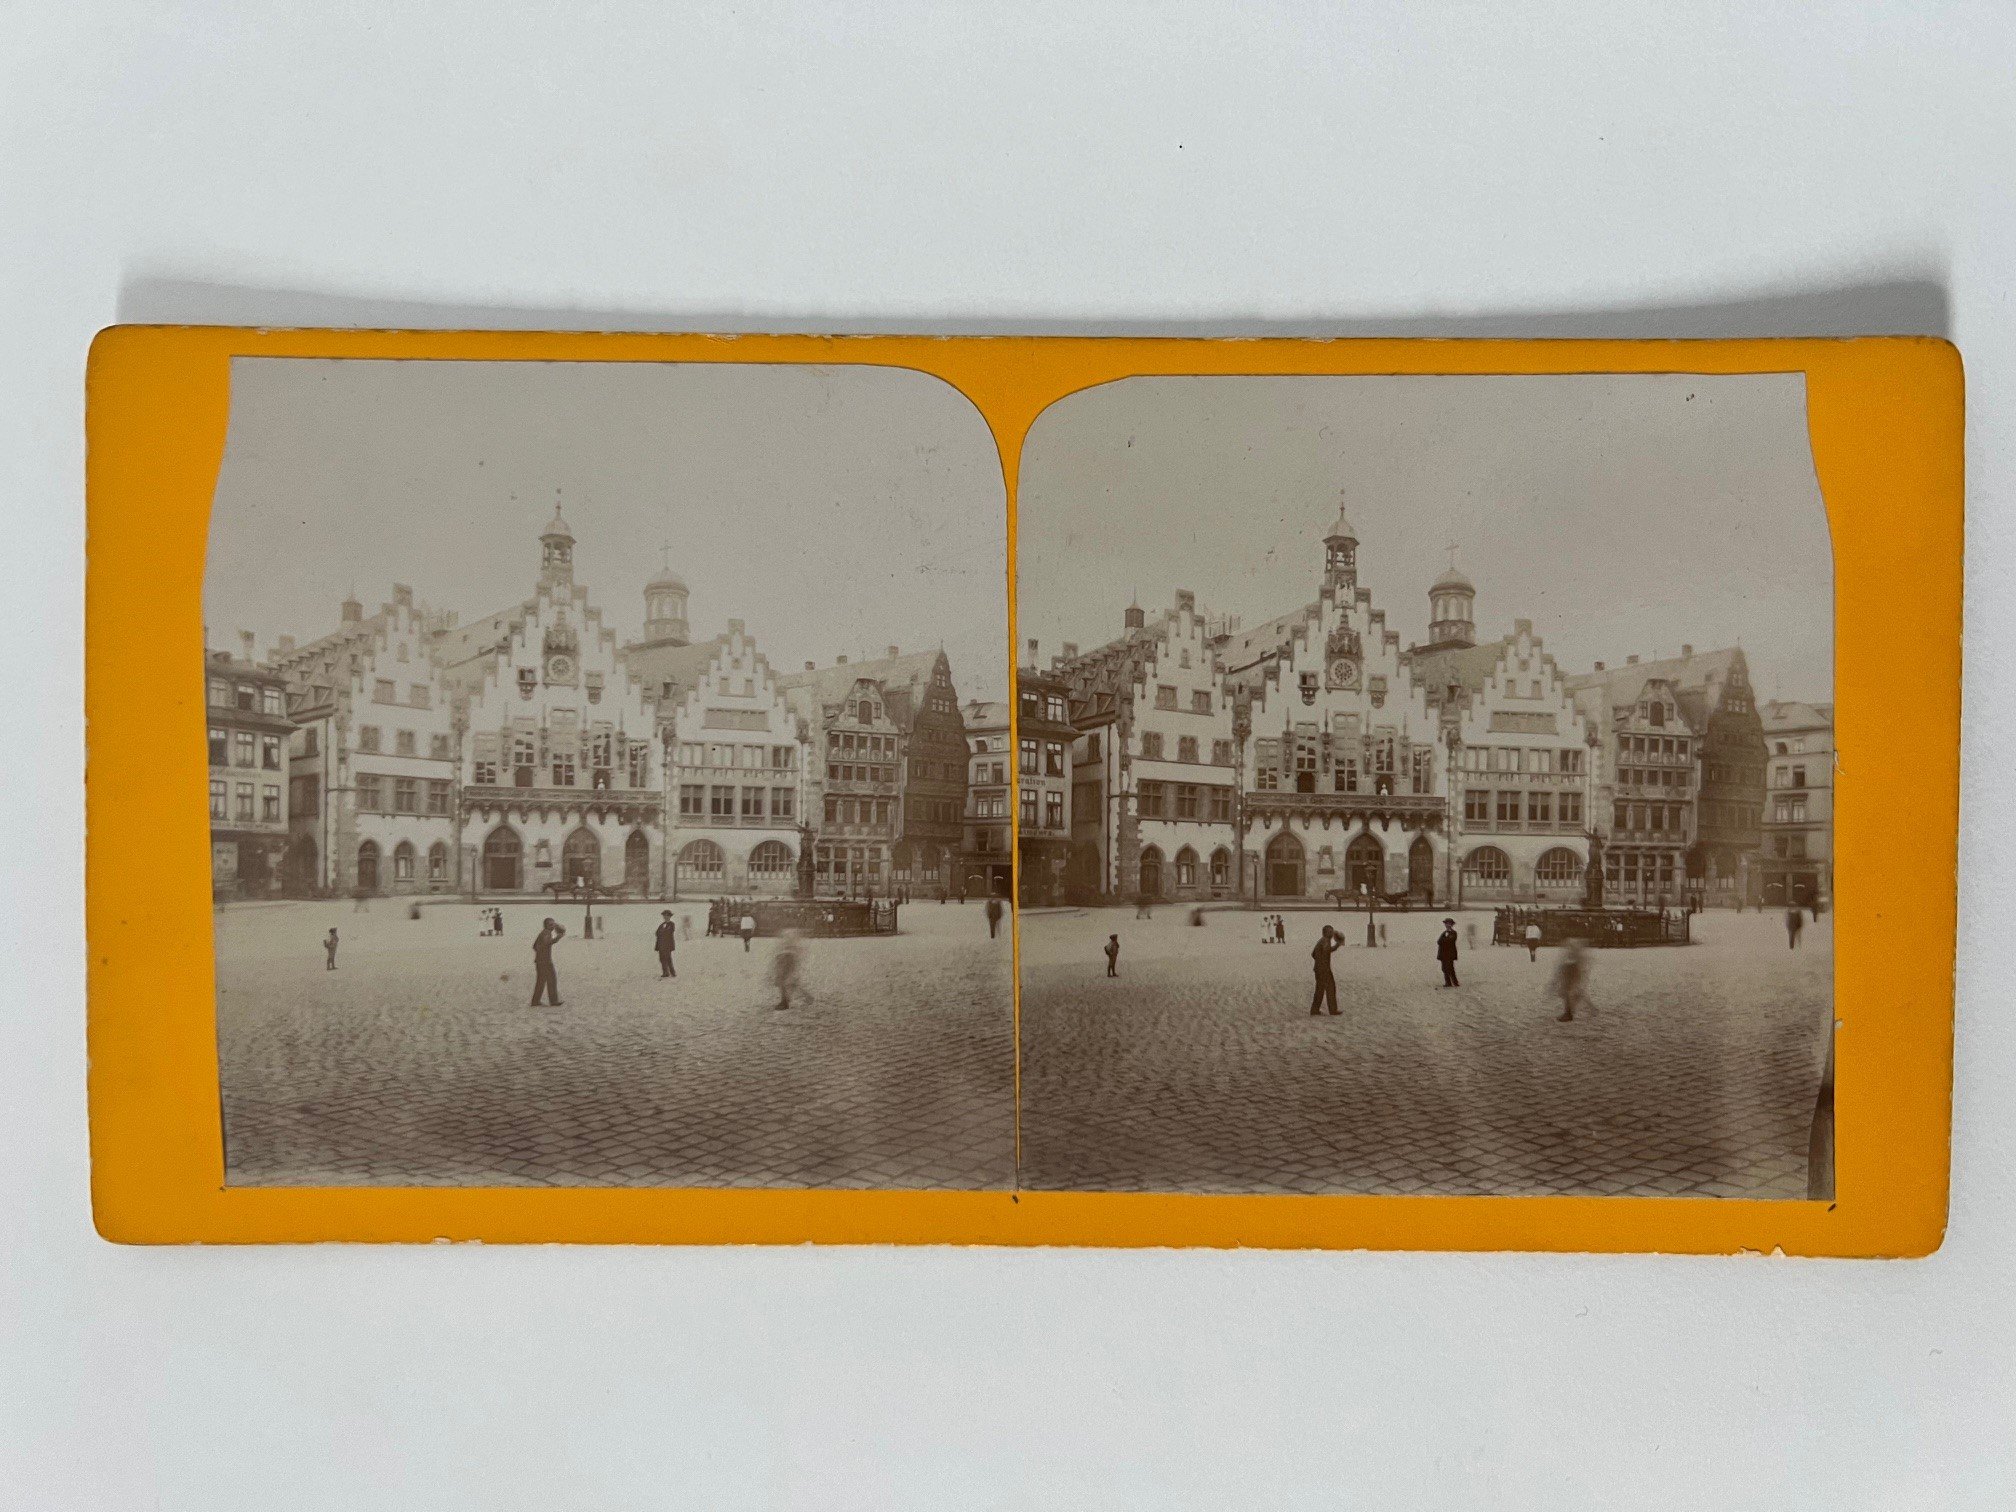 Stereobild, Unbekannter Fotograf, Frankfurt, Römerberg, dat. 1900. (Taunus-Rhein-Main - Regionalgeschichtliche Sammlung Dr. Stefan Naas CC BY-NC-SA)